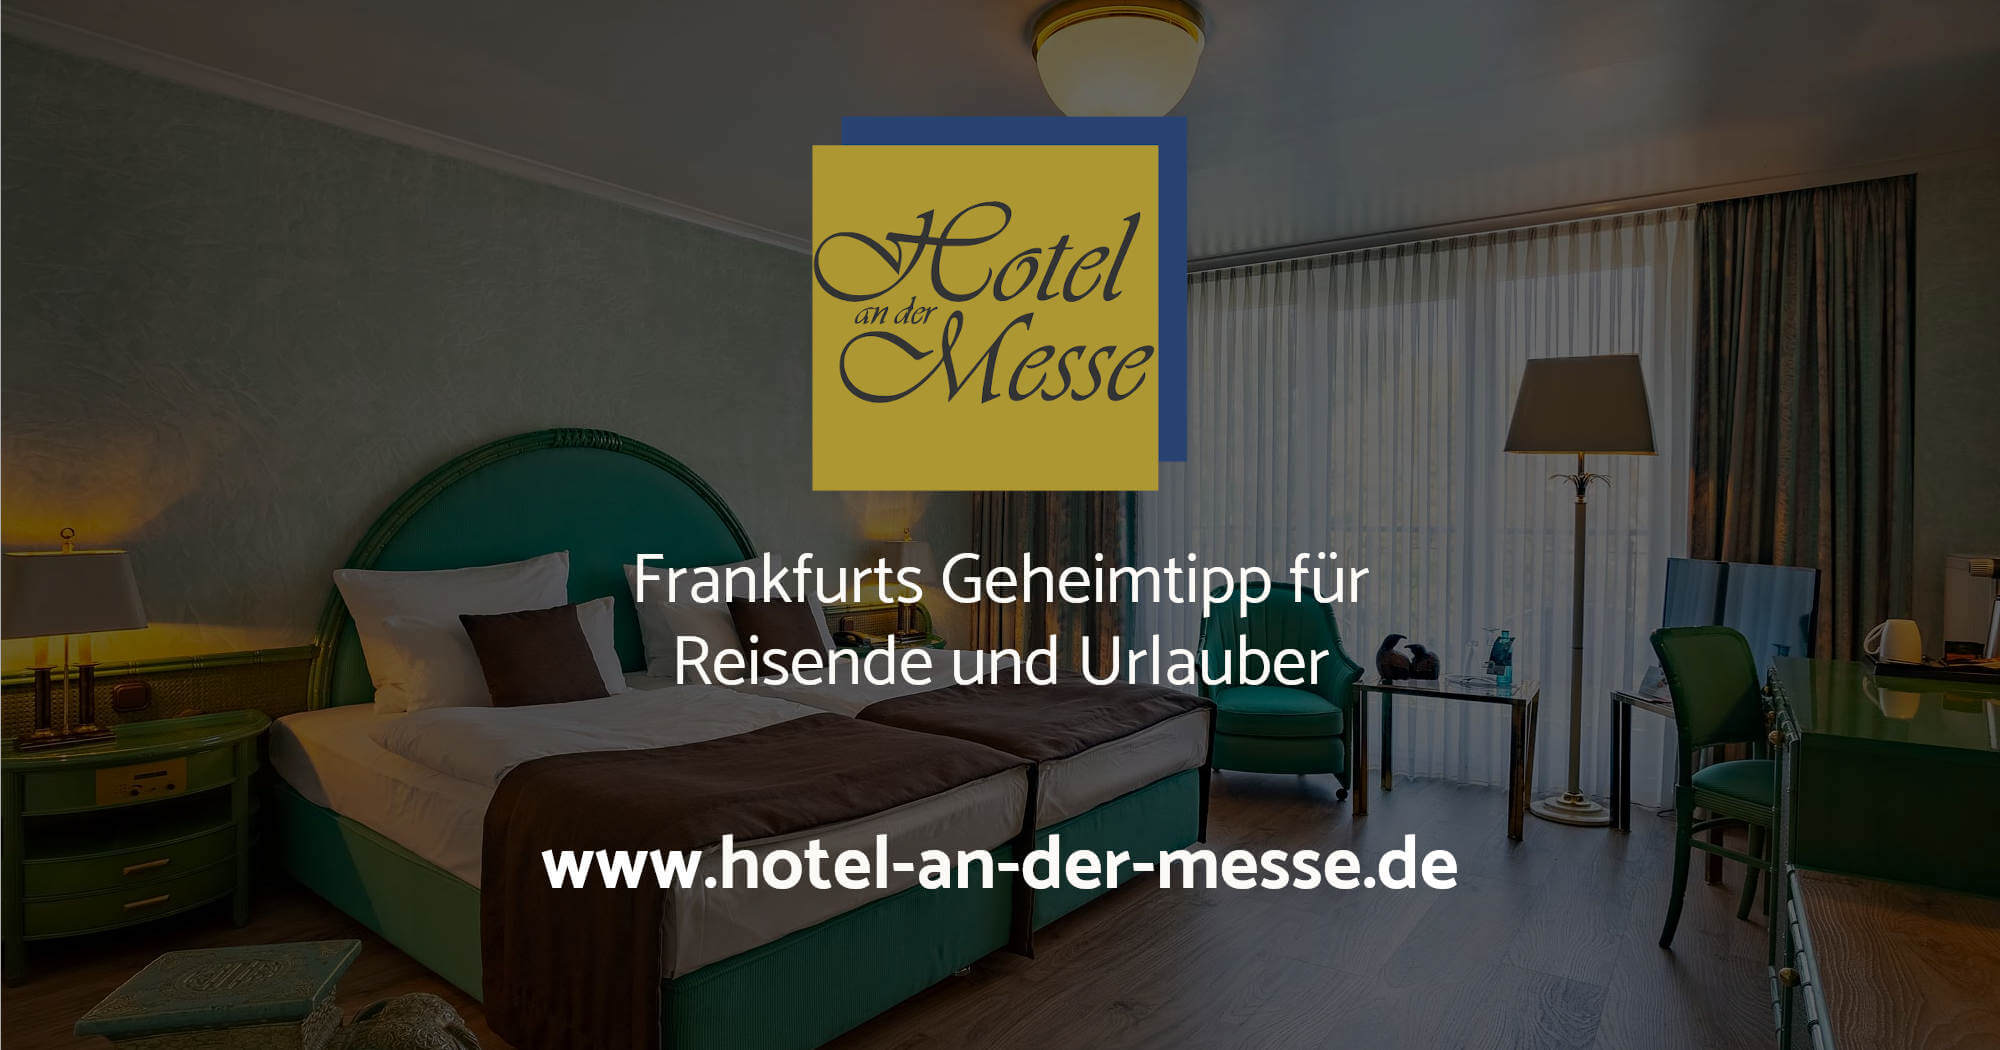 (c) Hotel-an-der-messe.de